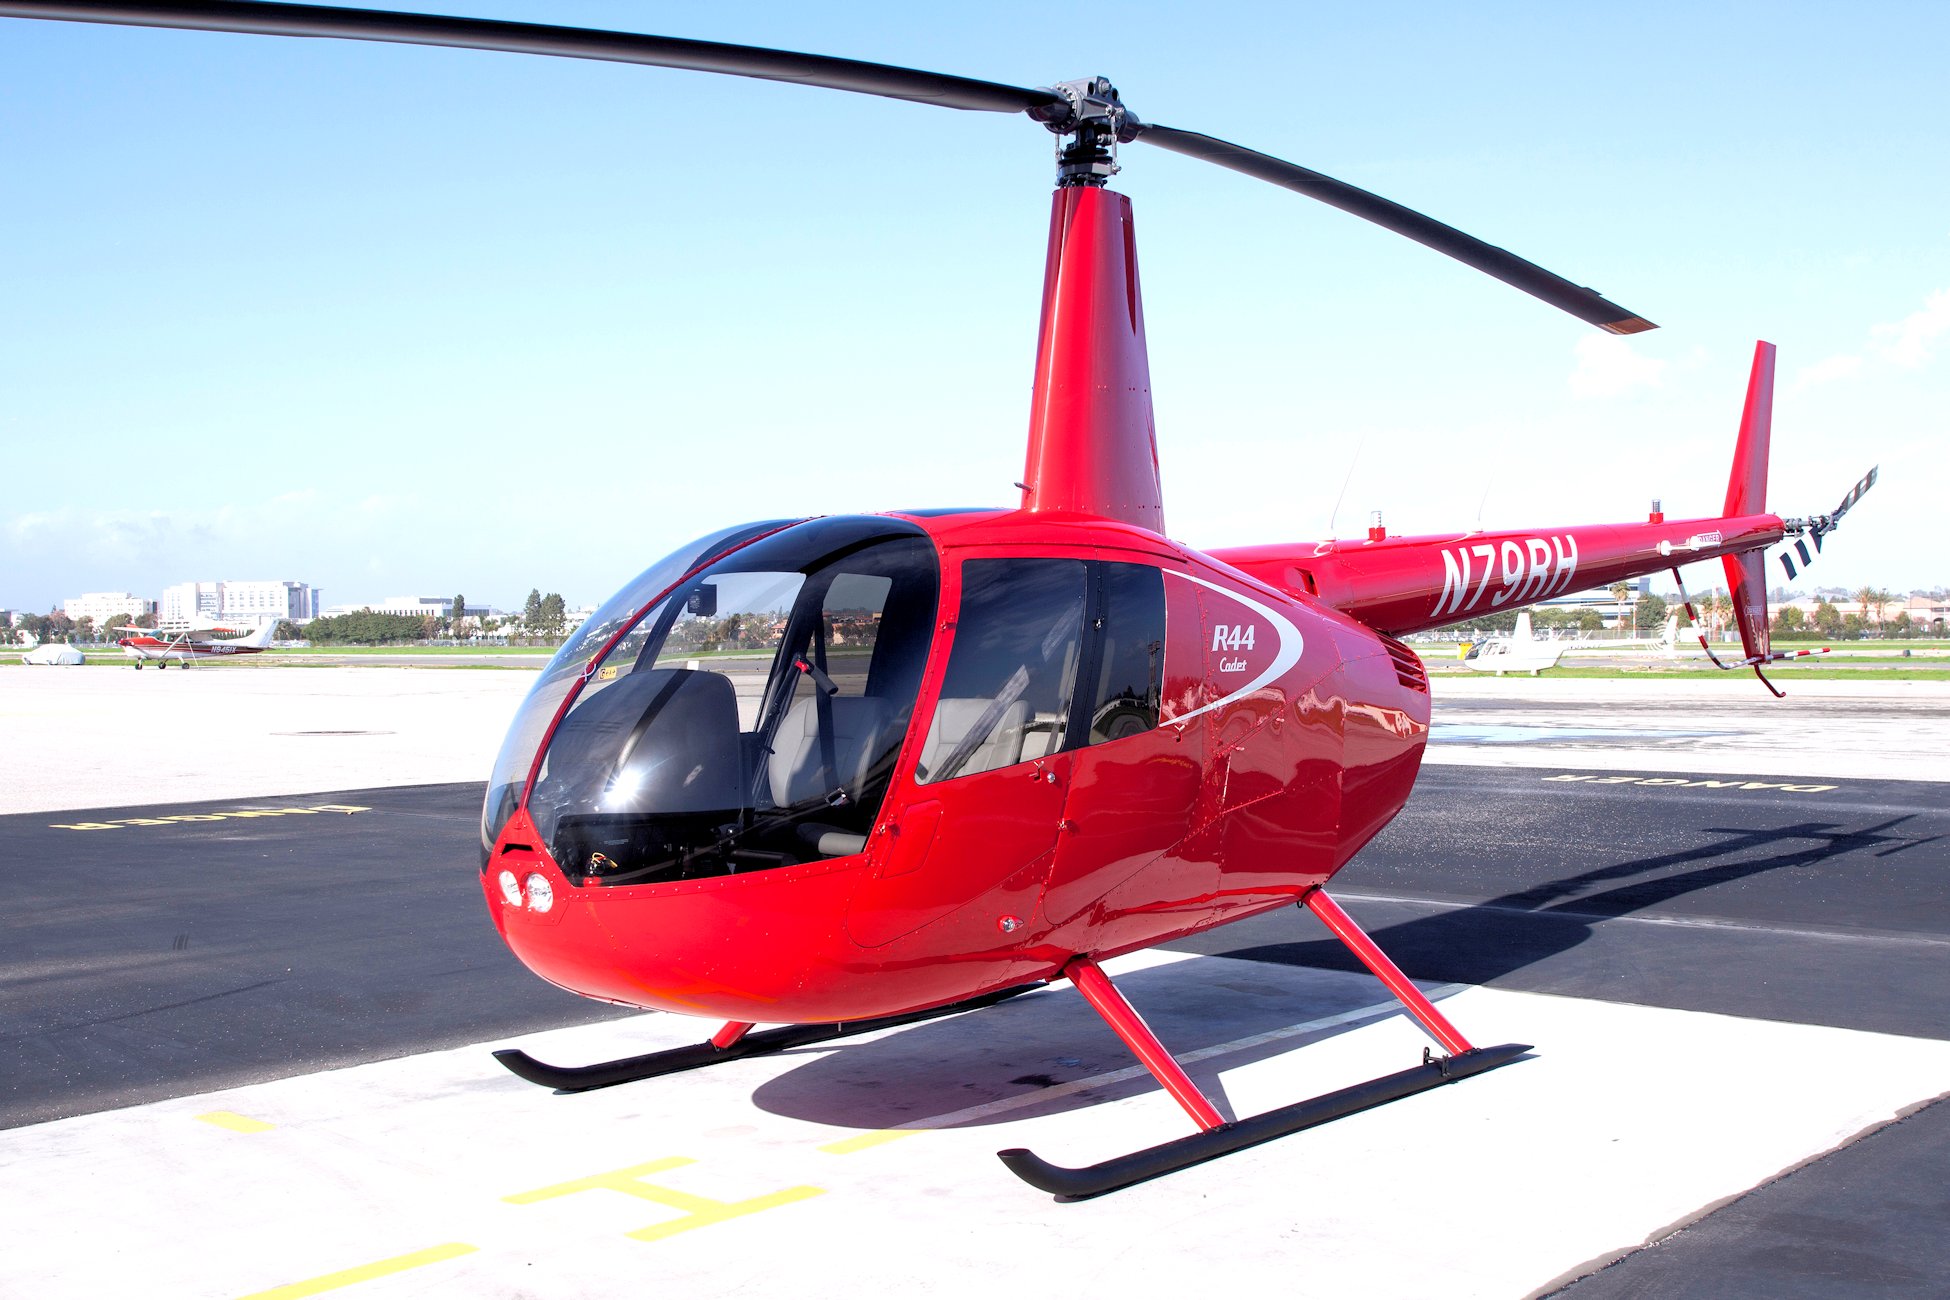 Robinson R44 Cadet Buy A New R44 Cadet With Heli Air